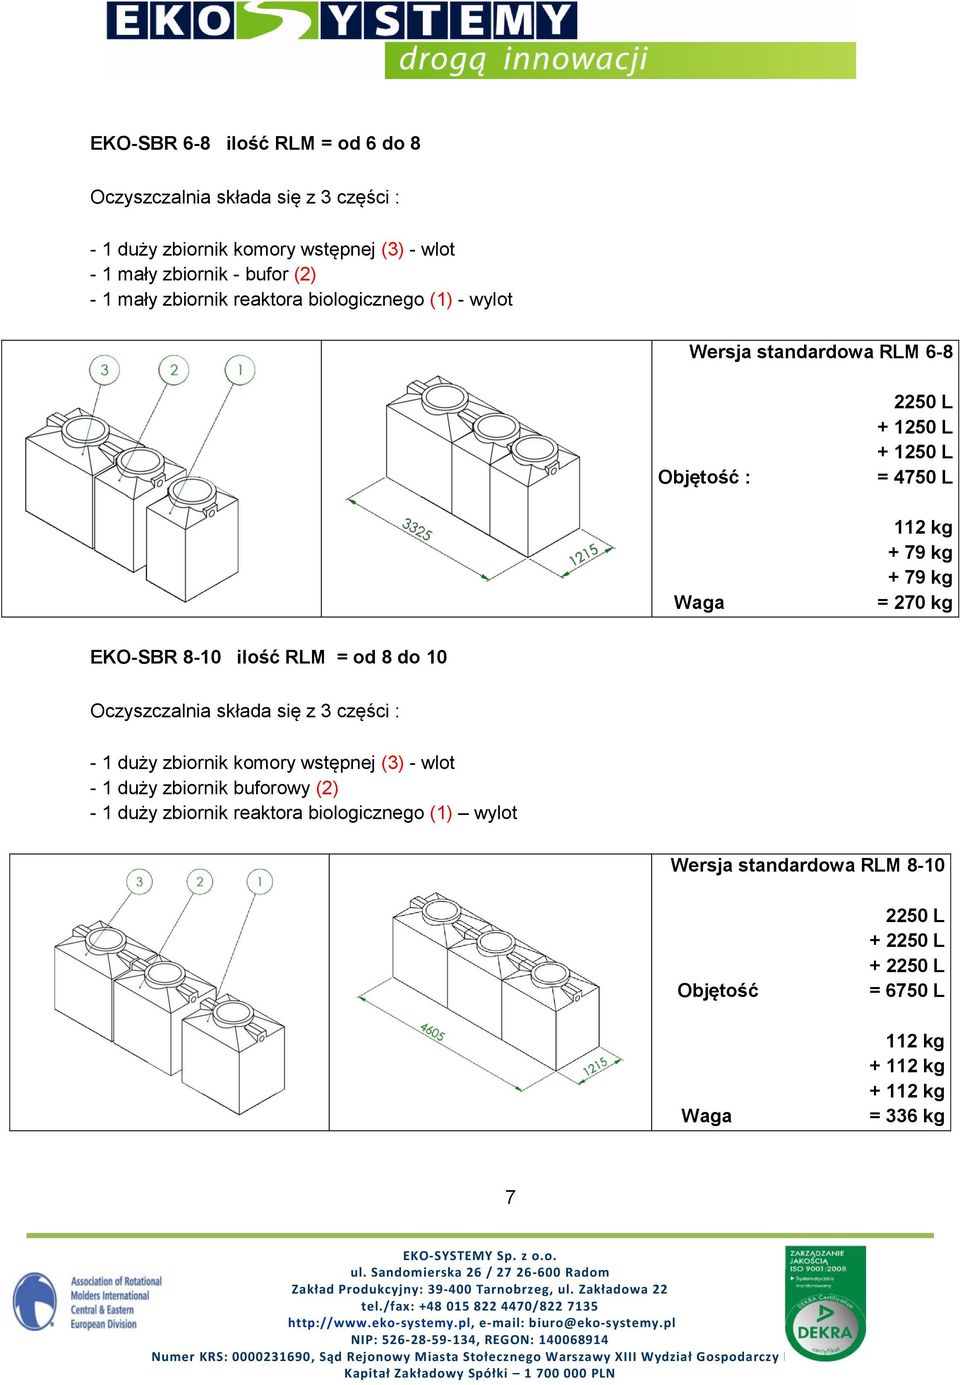 EKO-SBR 8-10 ilość RLM = od 8 do 10 Oczyszczalnia składa się z 3 części : - 1 duży zbiornik komory wstępnej (3) - wlot - 1 duży zbiornik buforowy (2) - 1